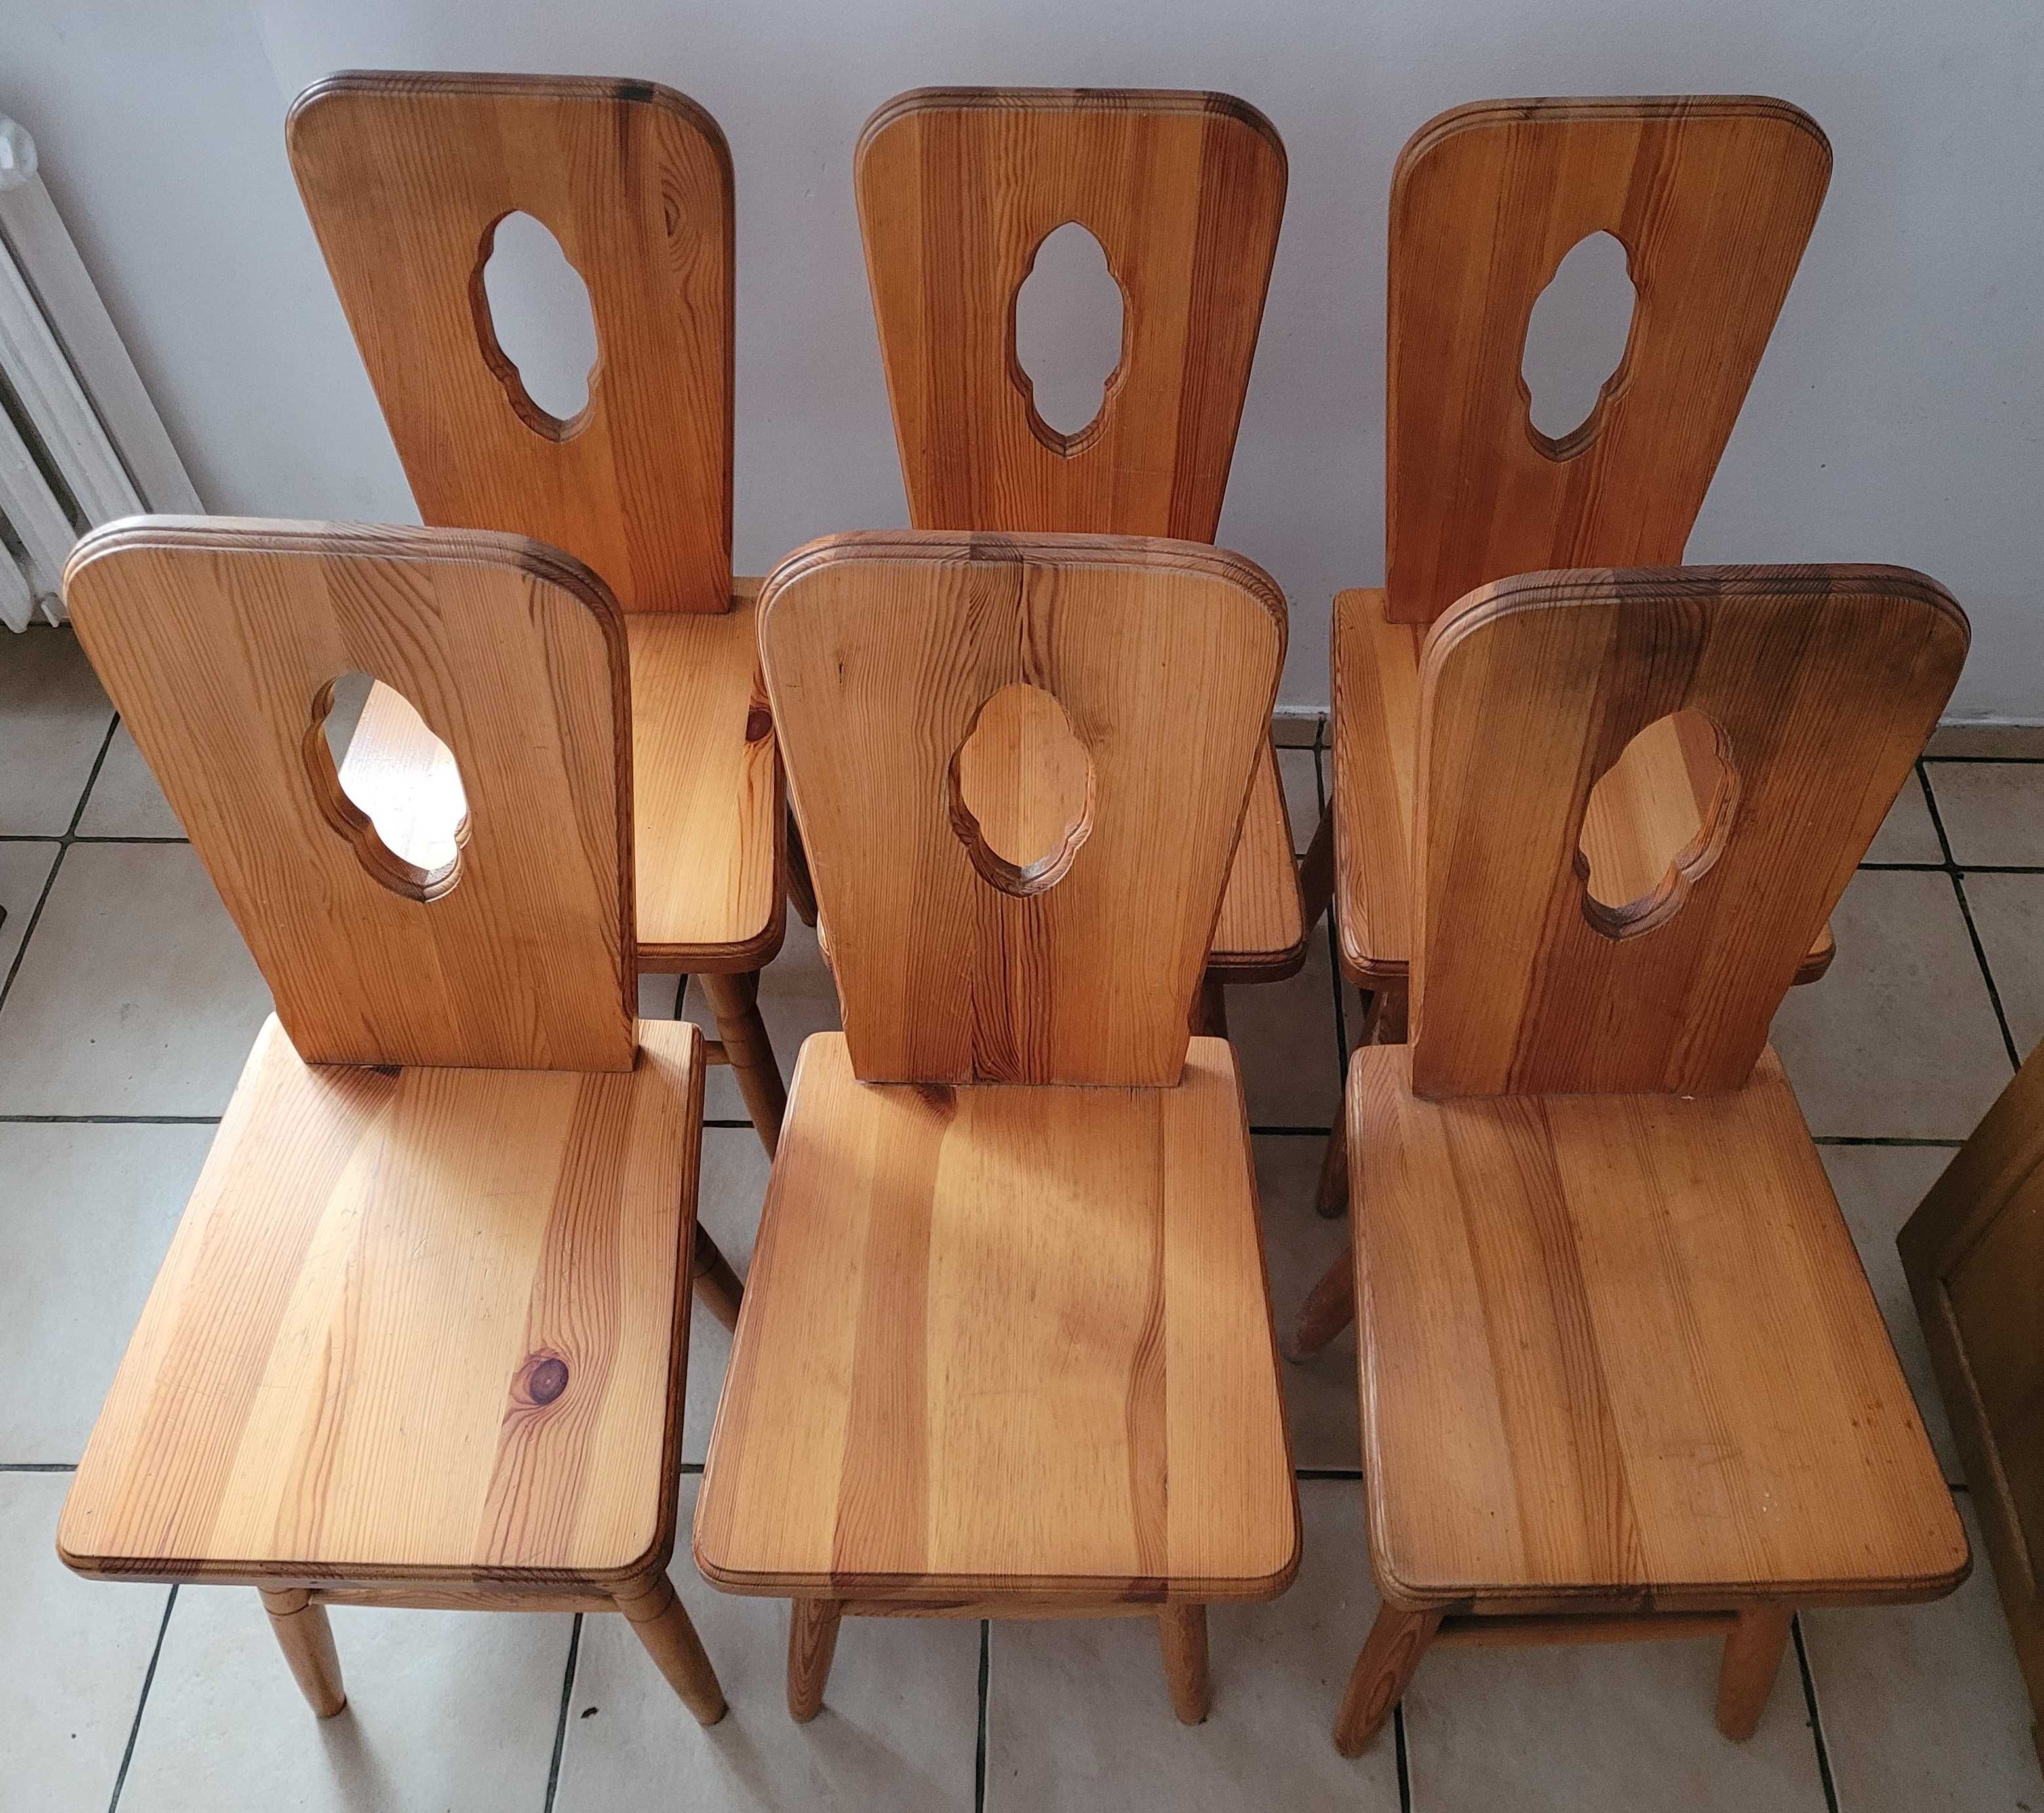 Drewniane krzesła i stół kuchenny z lat 80tych w stylu cepelia